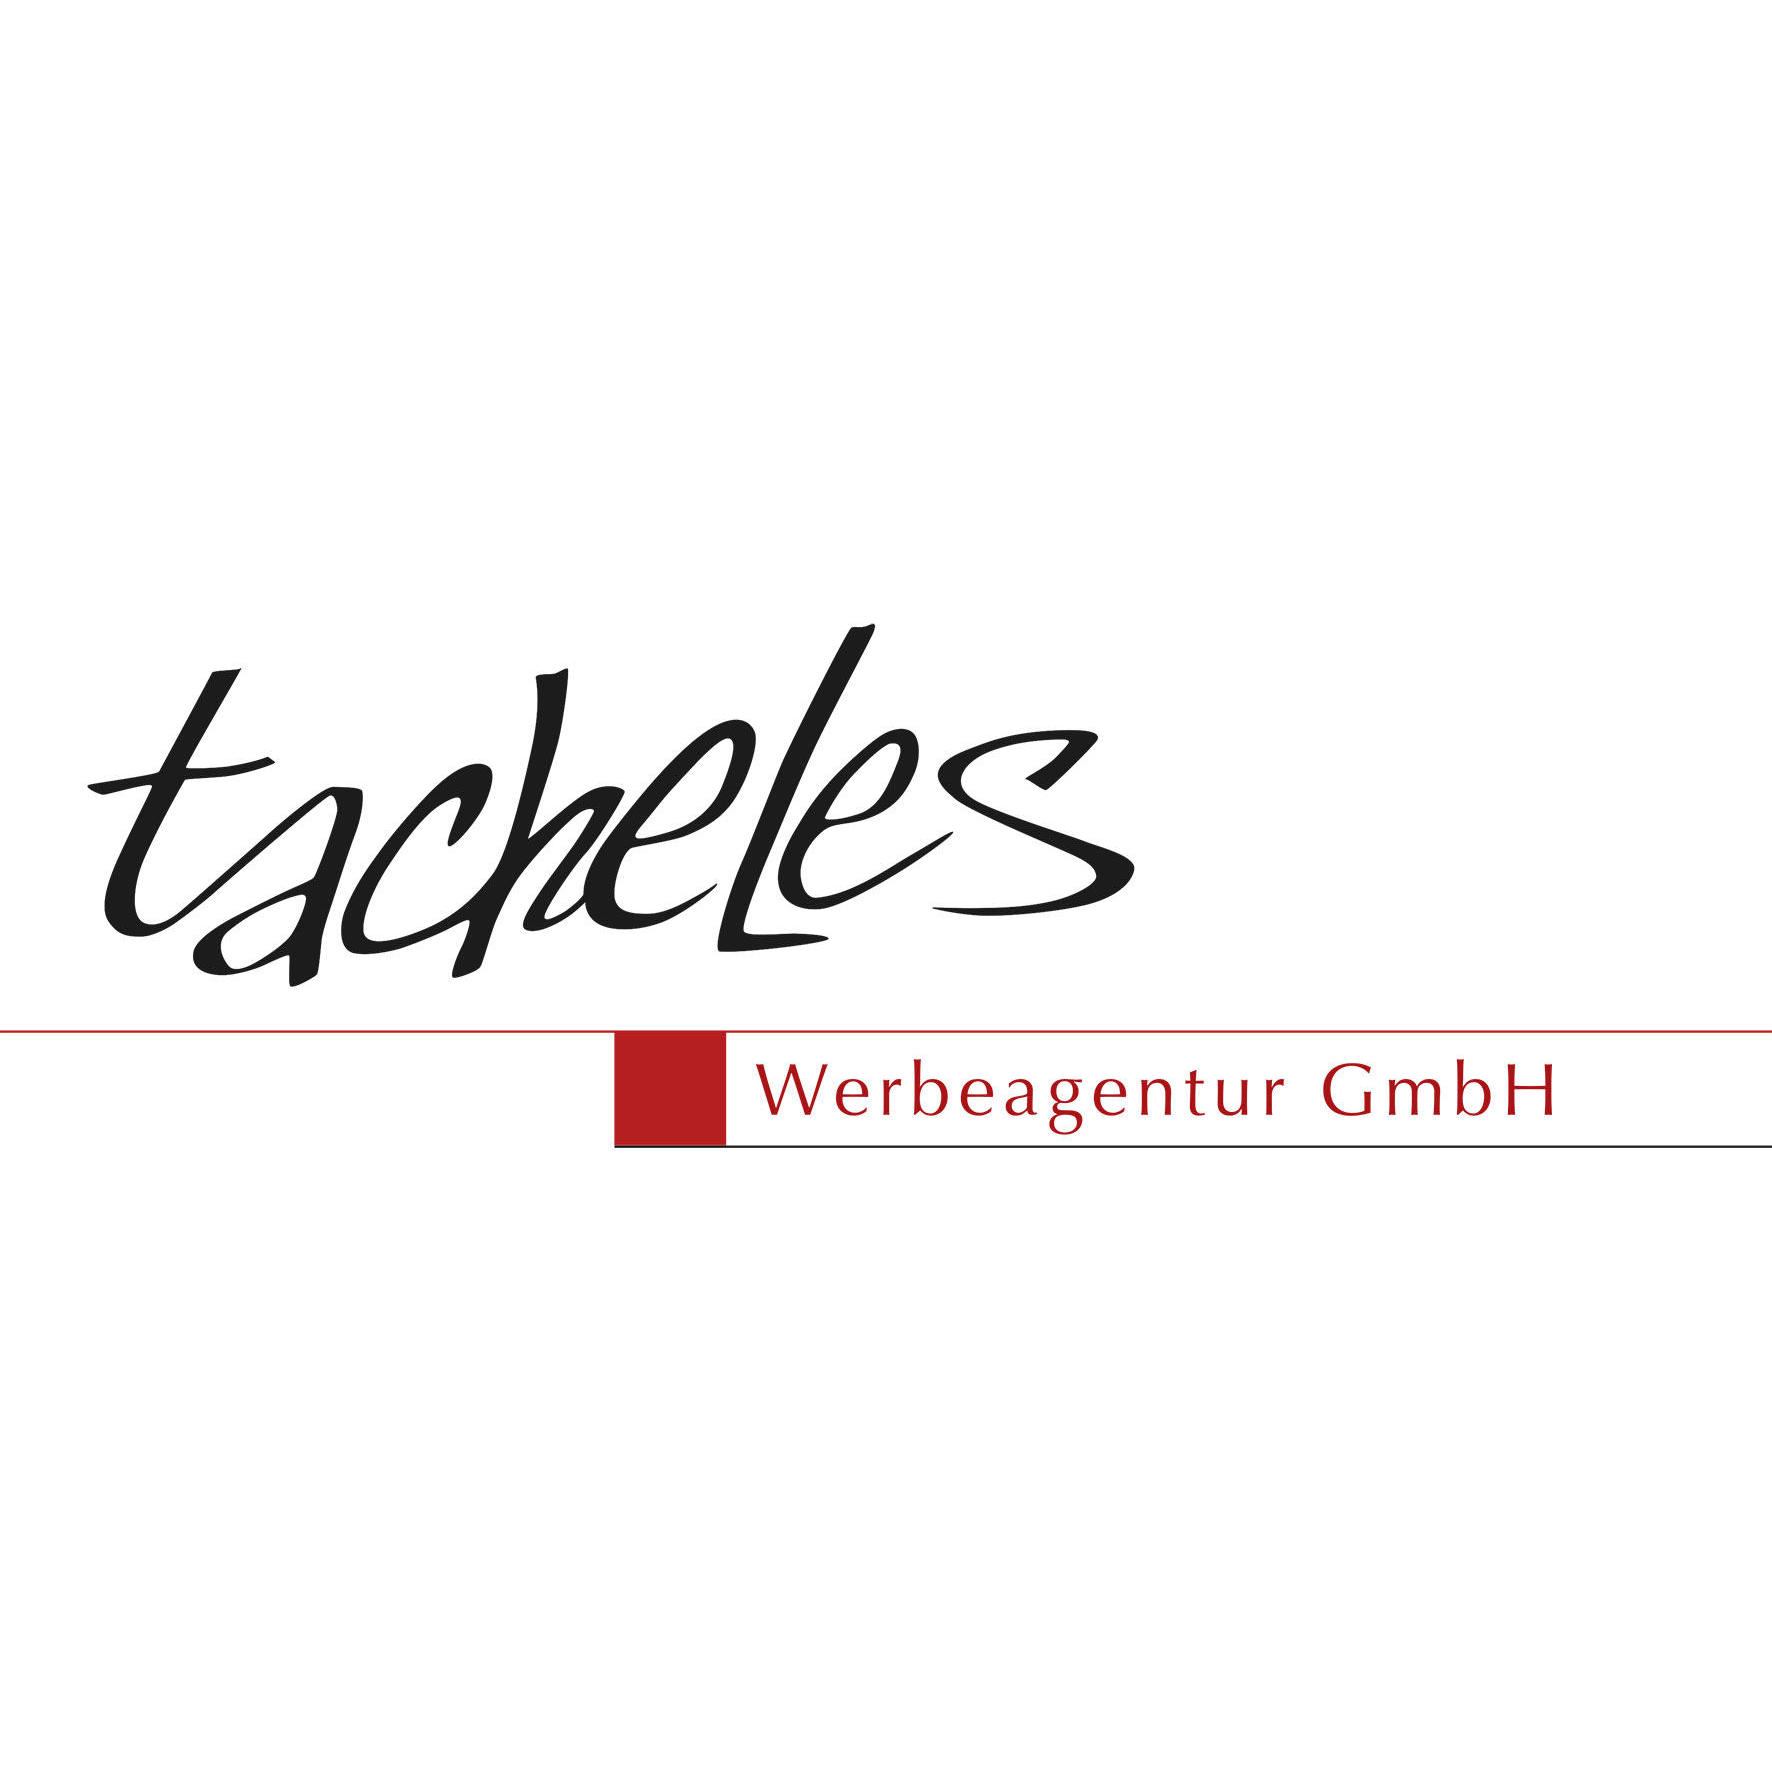 tacheles Werbeagentur GmbH in Mönchengladbach - Logo